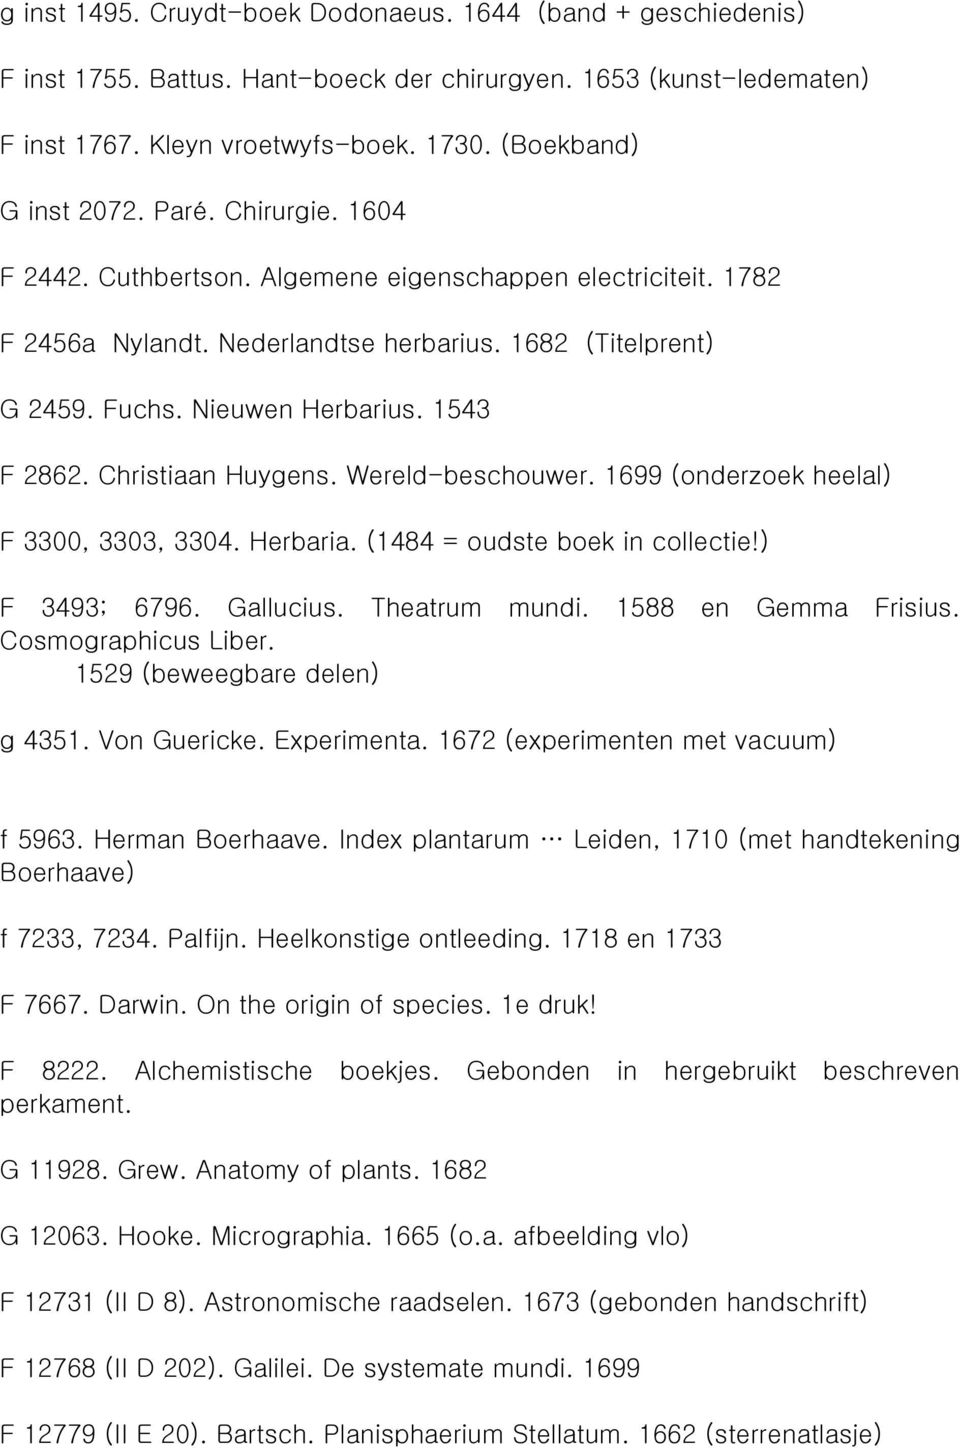 Christiaan Huygens. Wereld-beschouwer. 1699 (onderzoek heelal) F 3300, 3303, 3304. Herbaria. (1484 = oudste boek in collectie!) F 3493; 6796. Gallucius. Theatrum mundi. 1588 en Gemma Frisius.